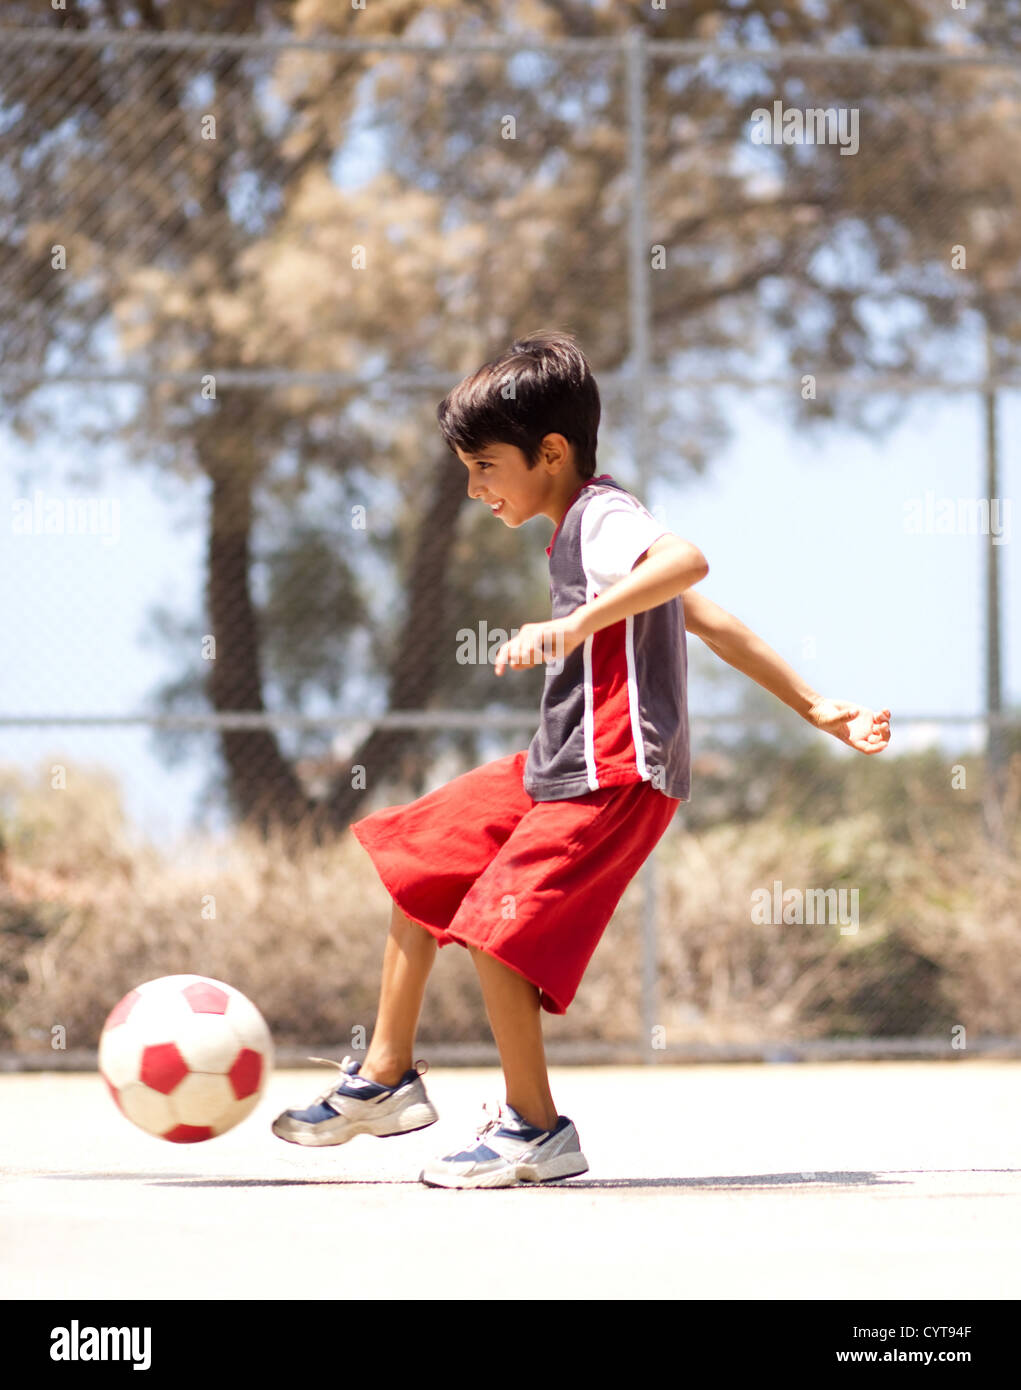 Jeune en action profitant à l'extérieur, de soccer Banque D'Images